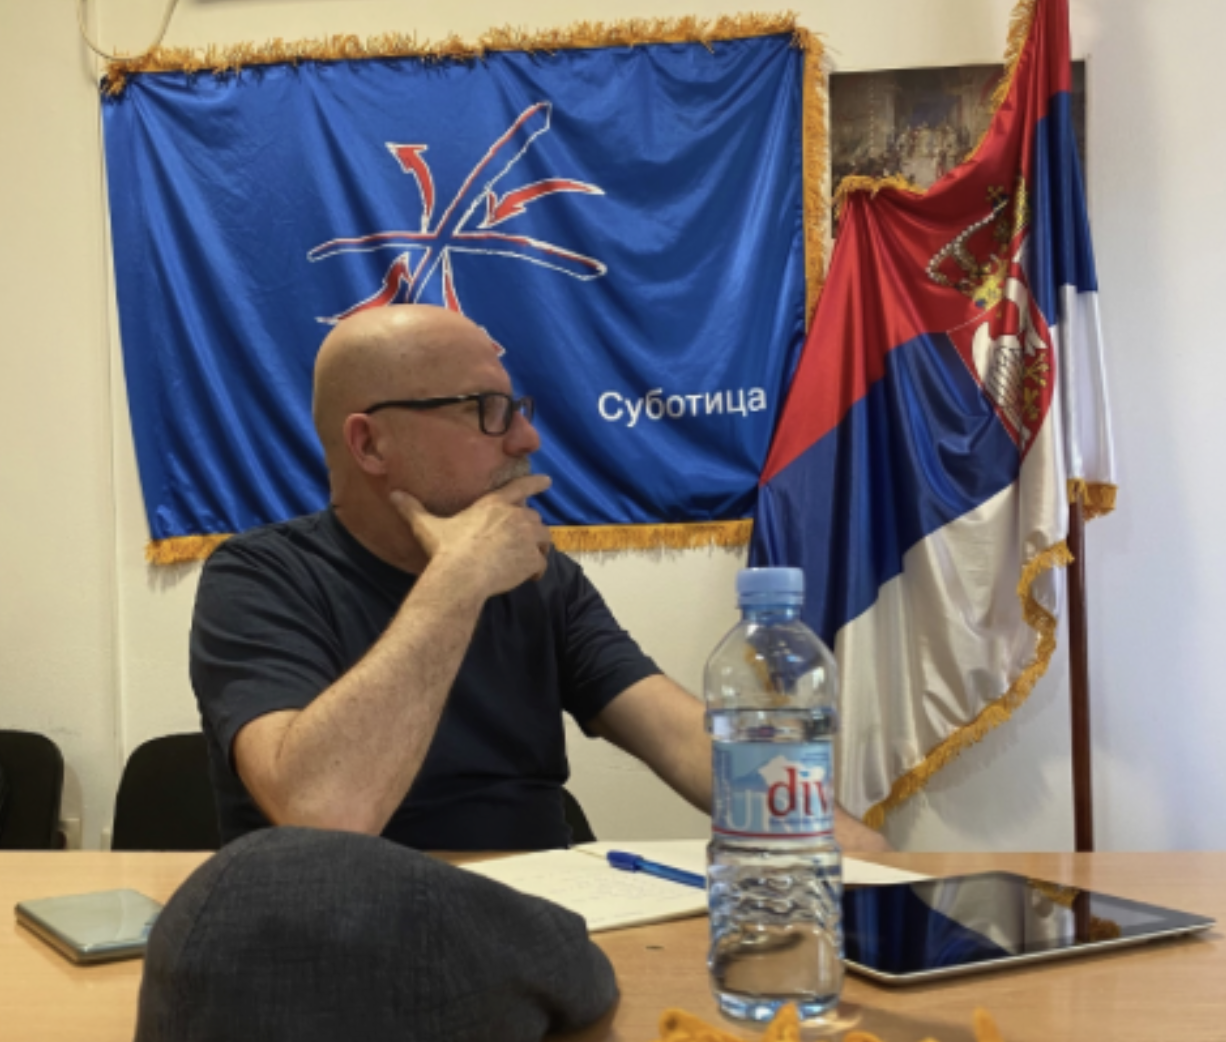 Meetings at Subotica Camp